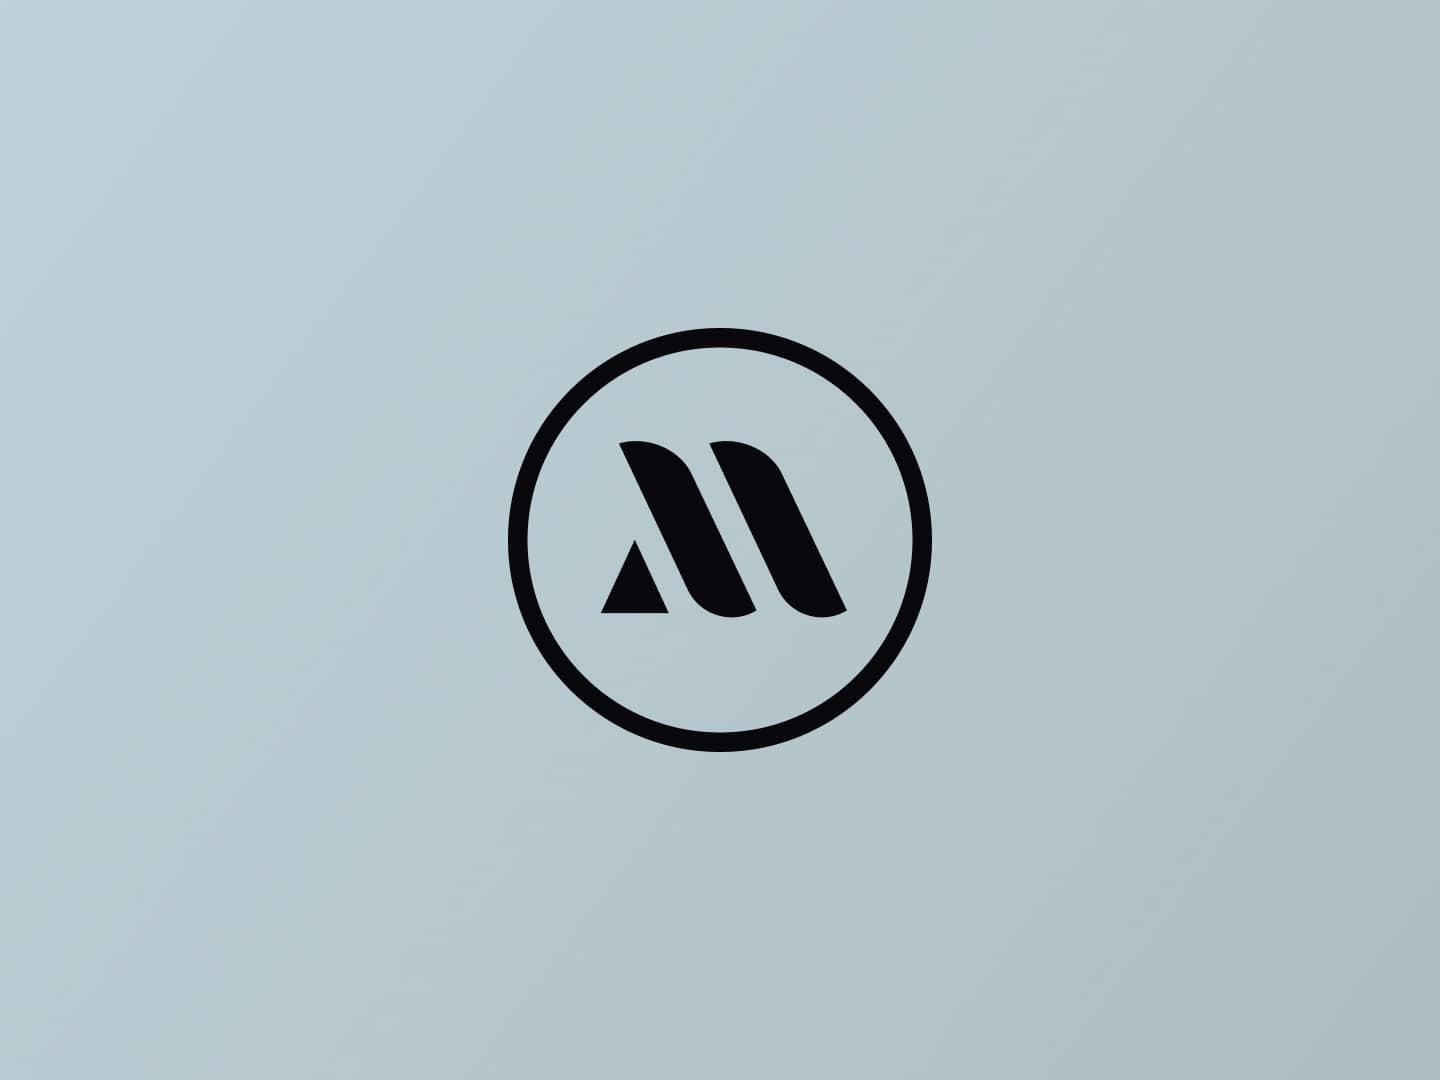 Mediasignal logomark in light background